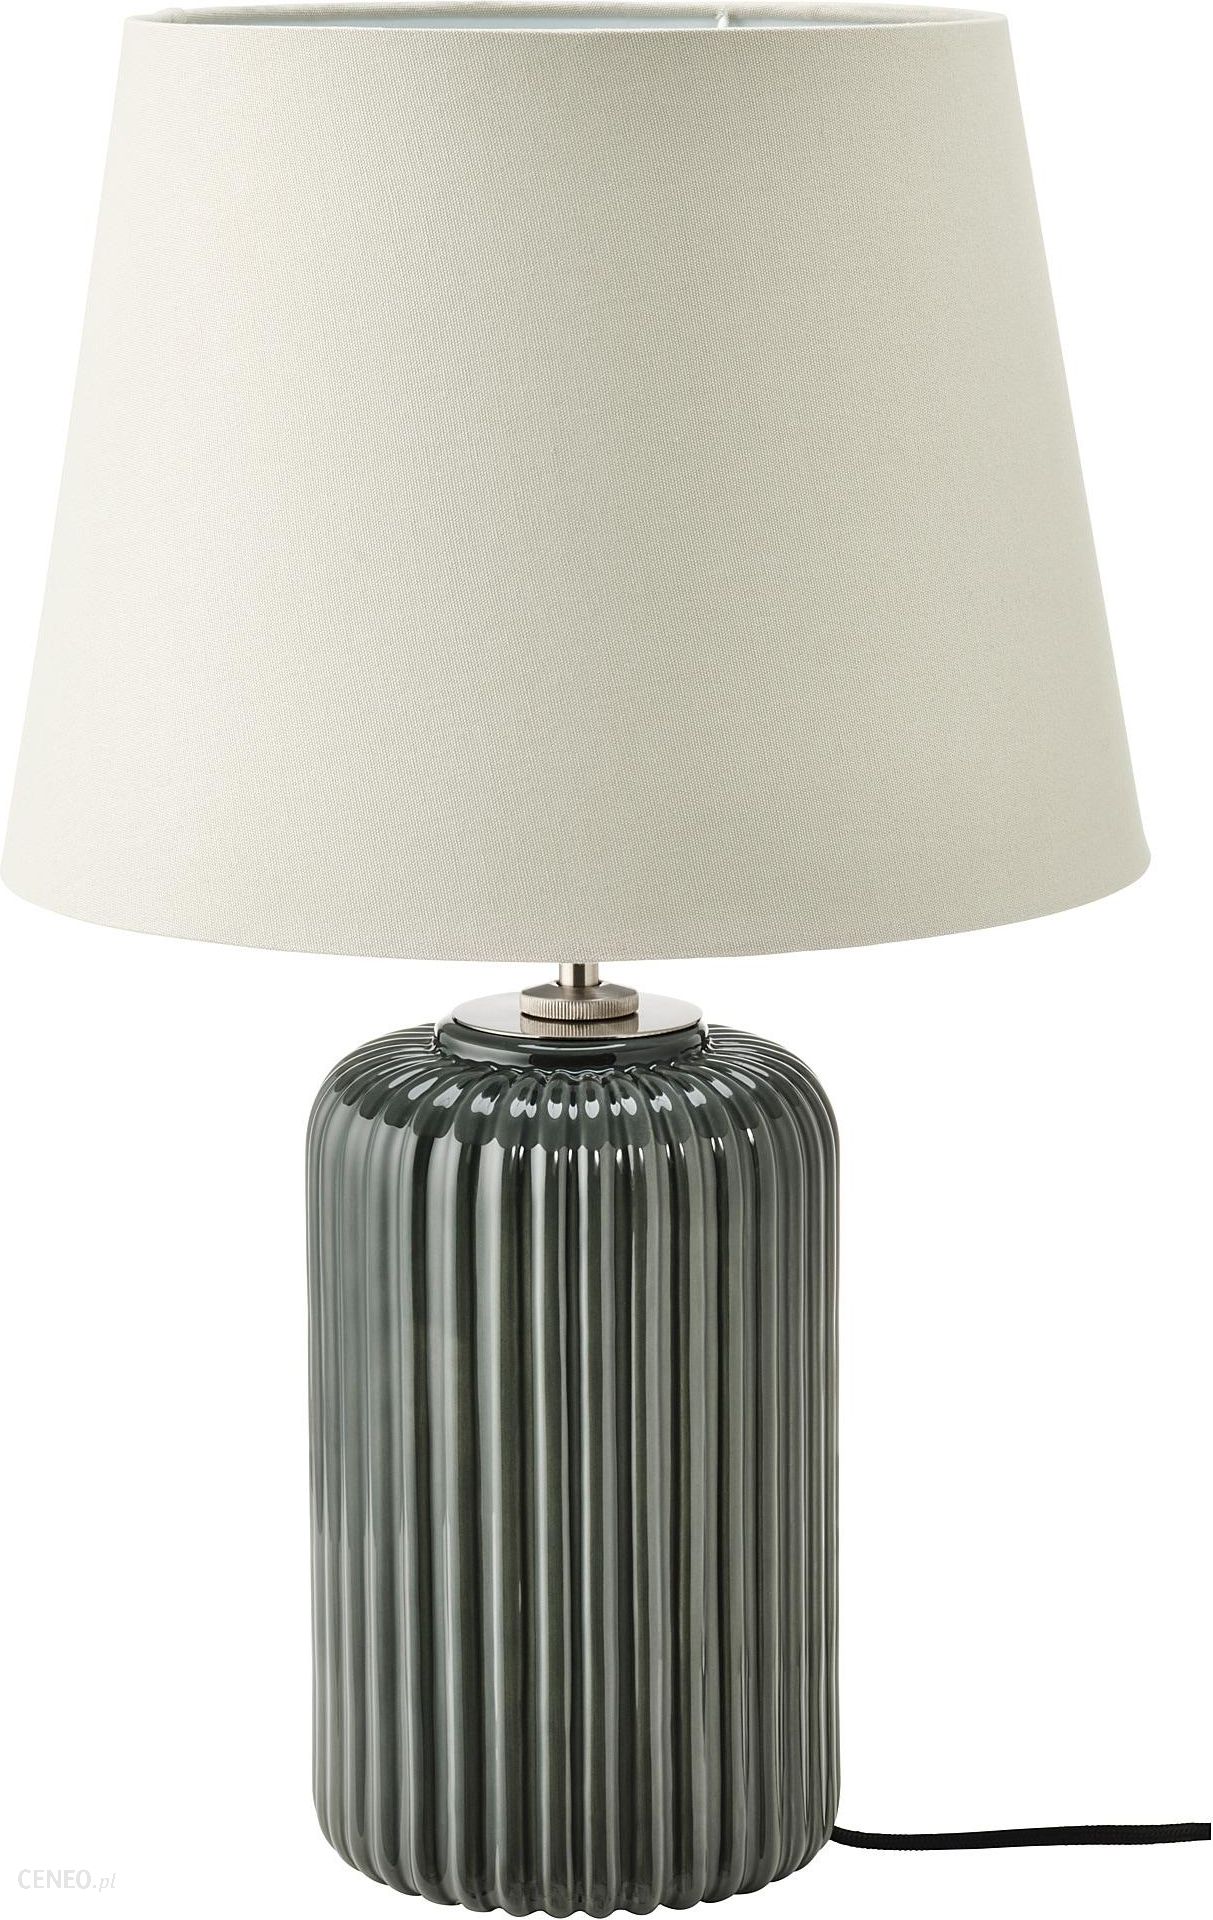 Lampa Ikea Snobyar Lampa Stolowa 50450401 Opinie I Atrakcyjne Ceny Na Ceneo Pl